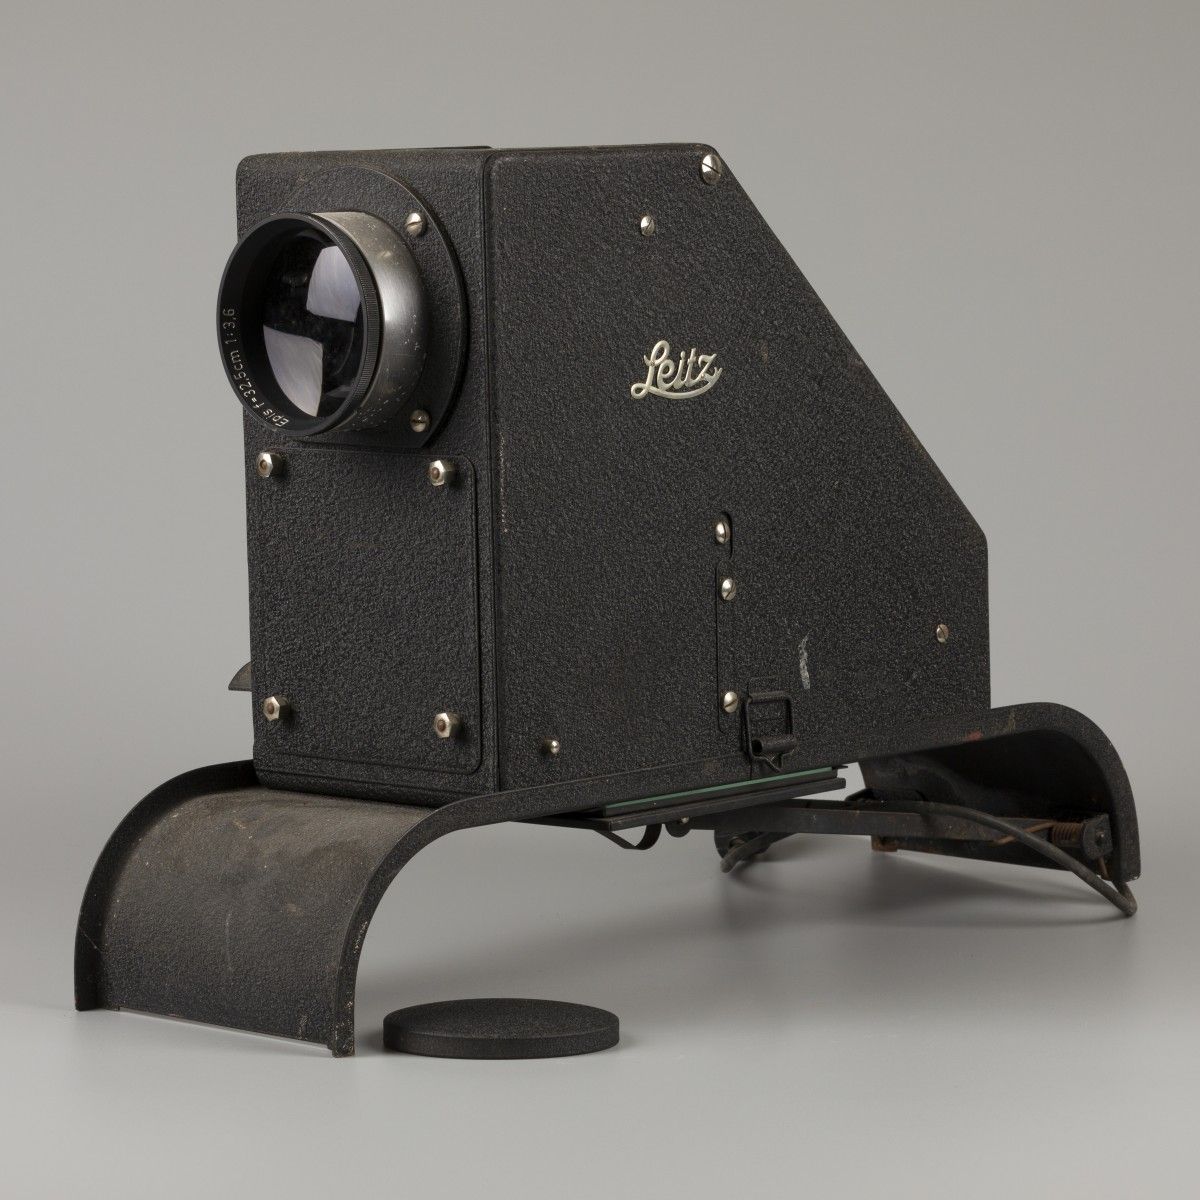 A Leitz Wetzlar epidiascope. 系列号。A79294